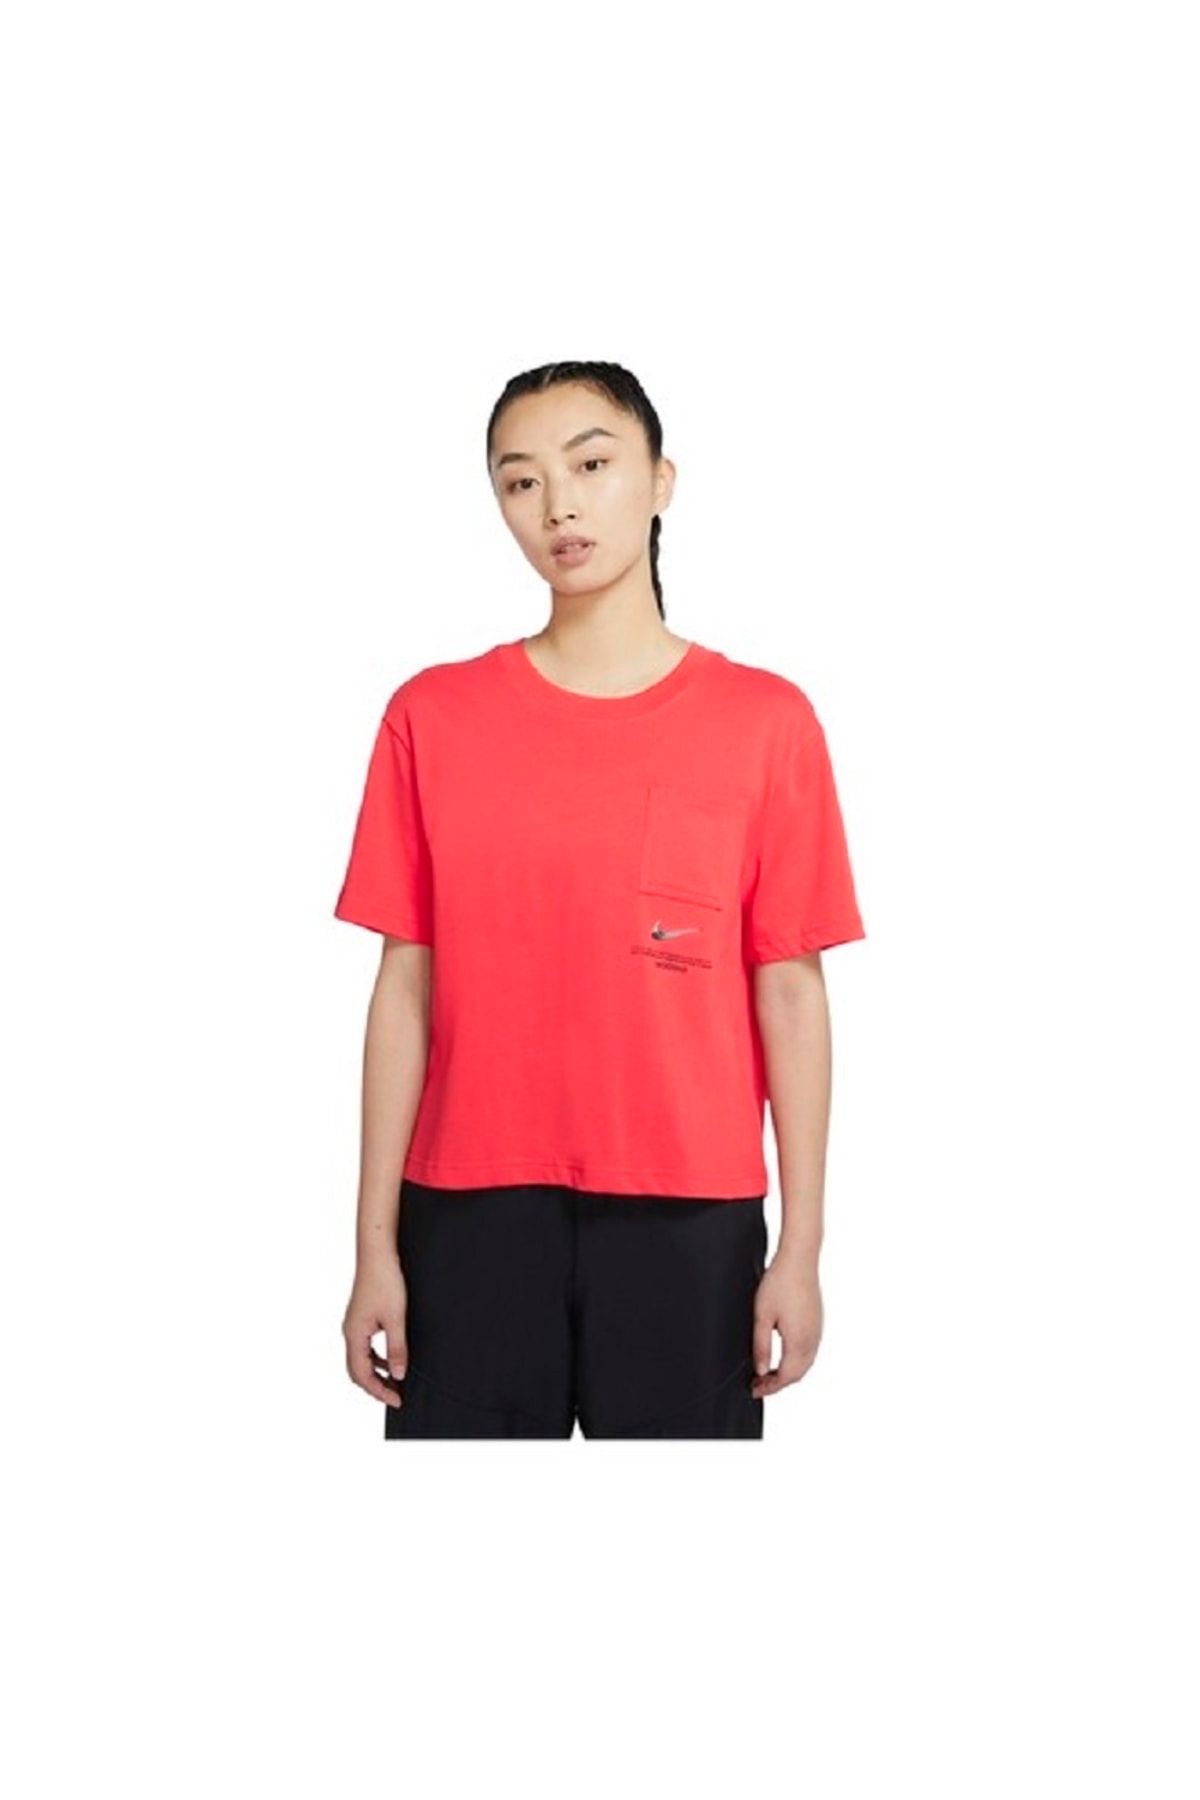 Nike Sportswear Swoosh Short Sleeve Top Kadın Tişört - Kırmızı